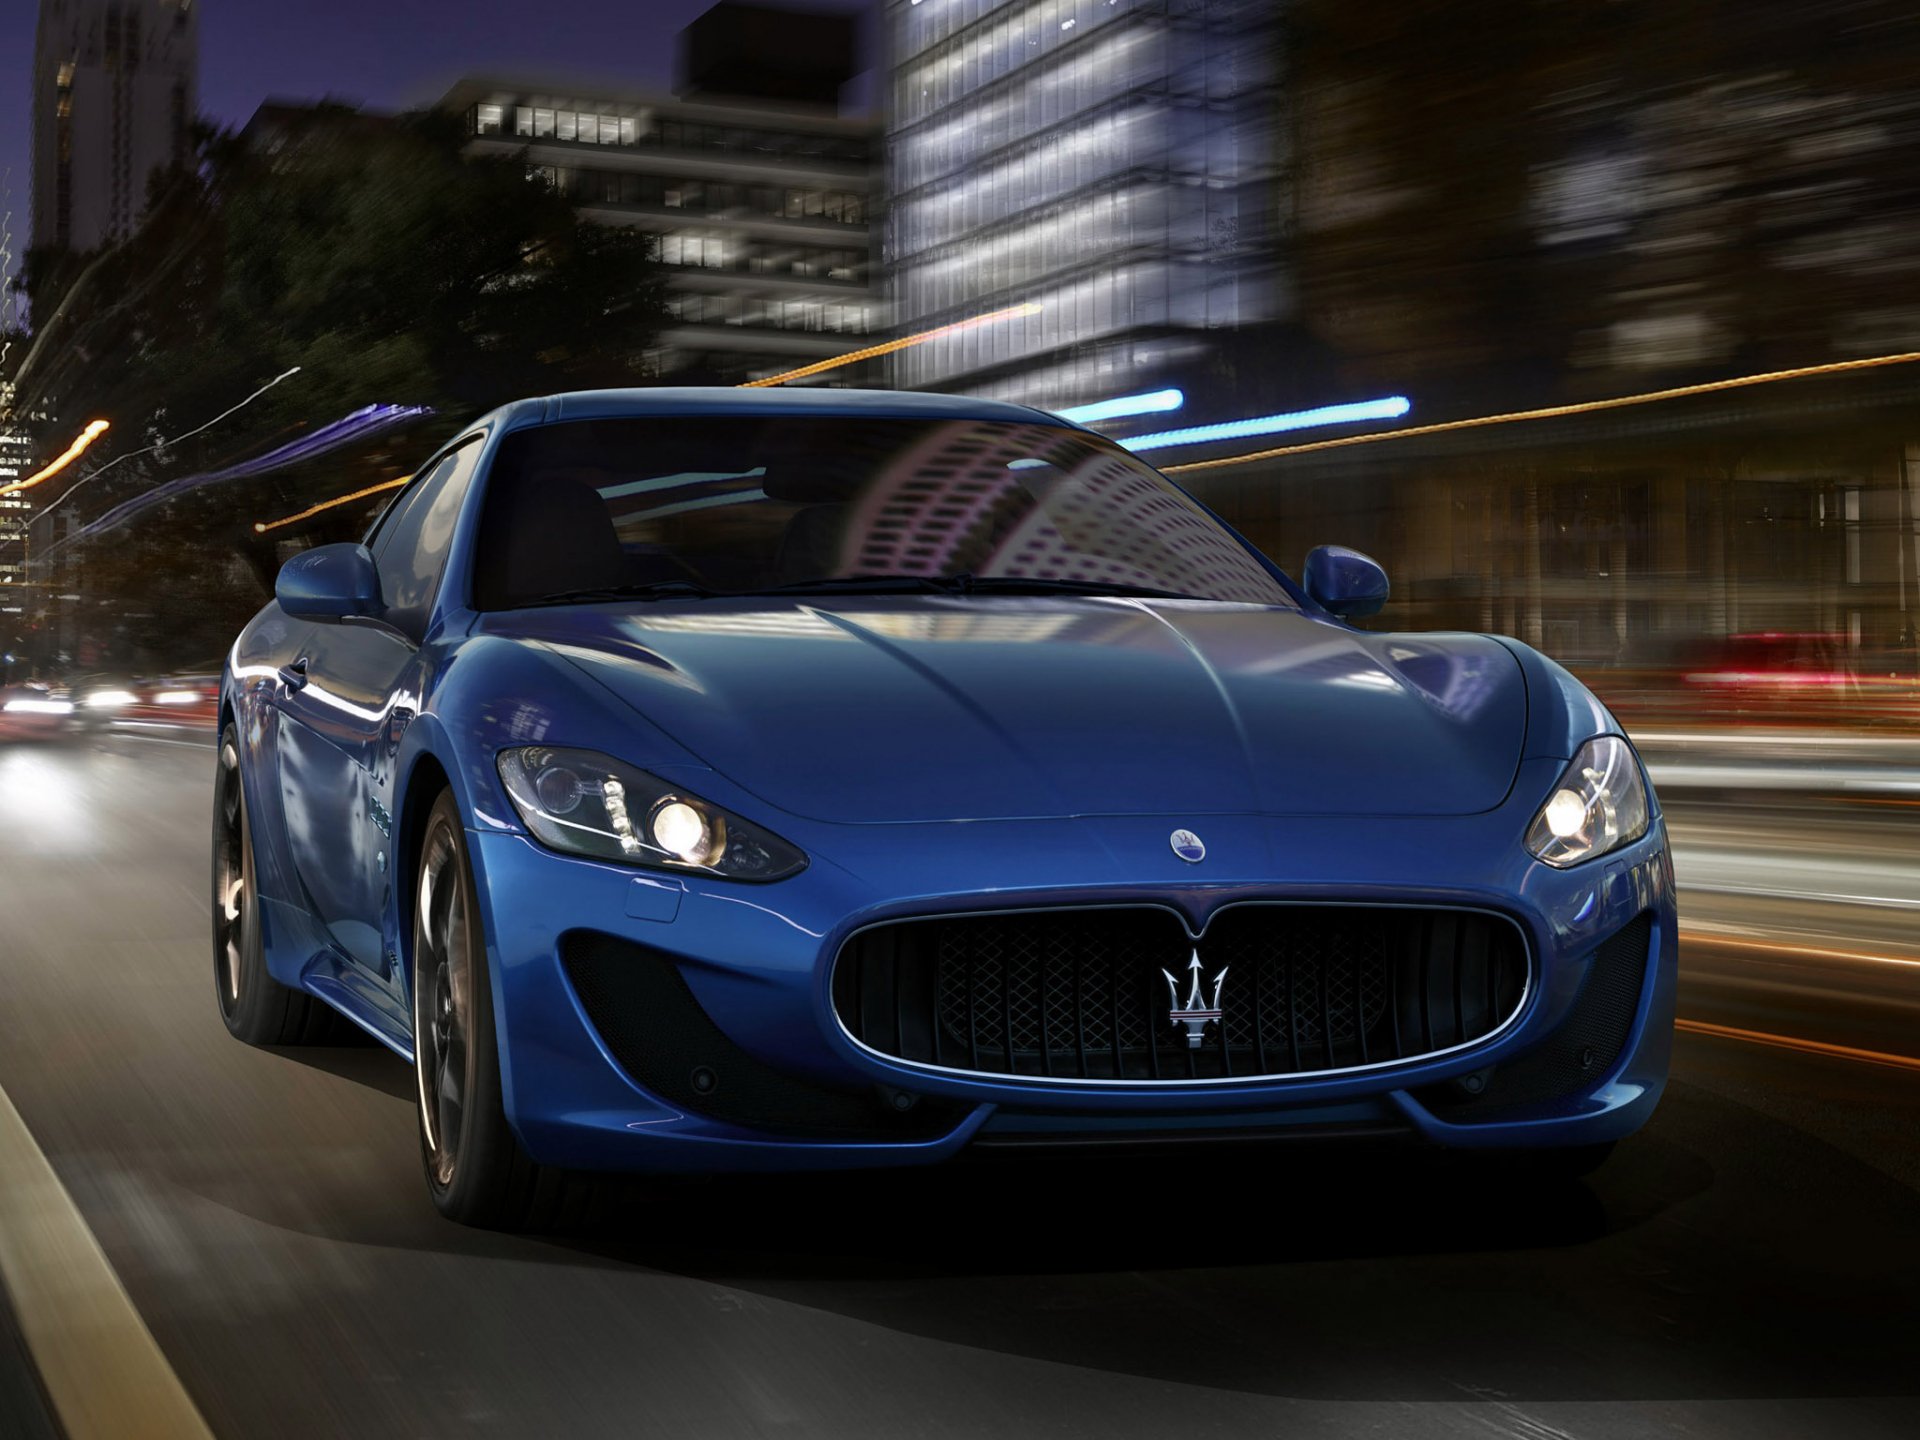 Maserati GranTurismo HD Wallpaper Background Image